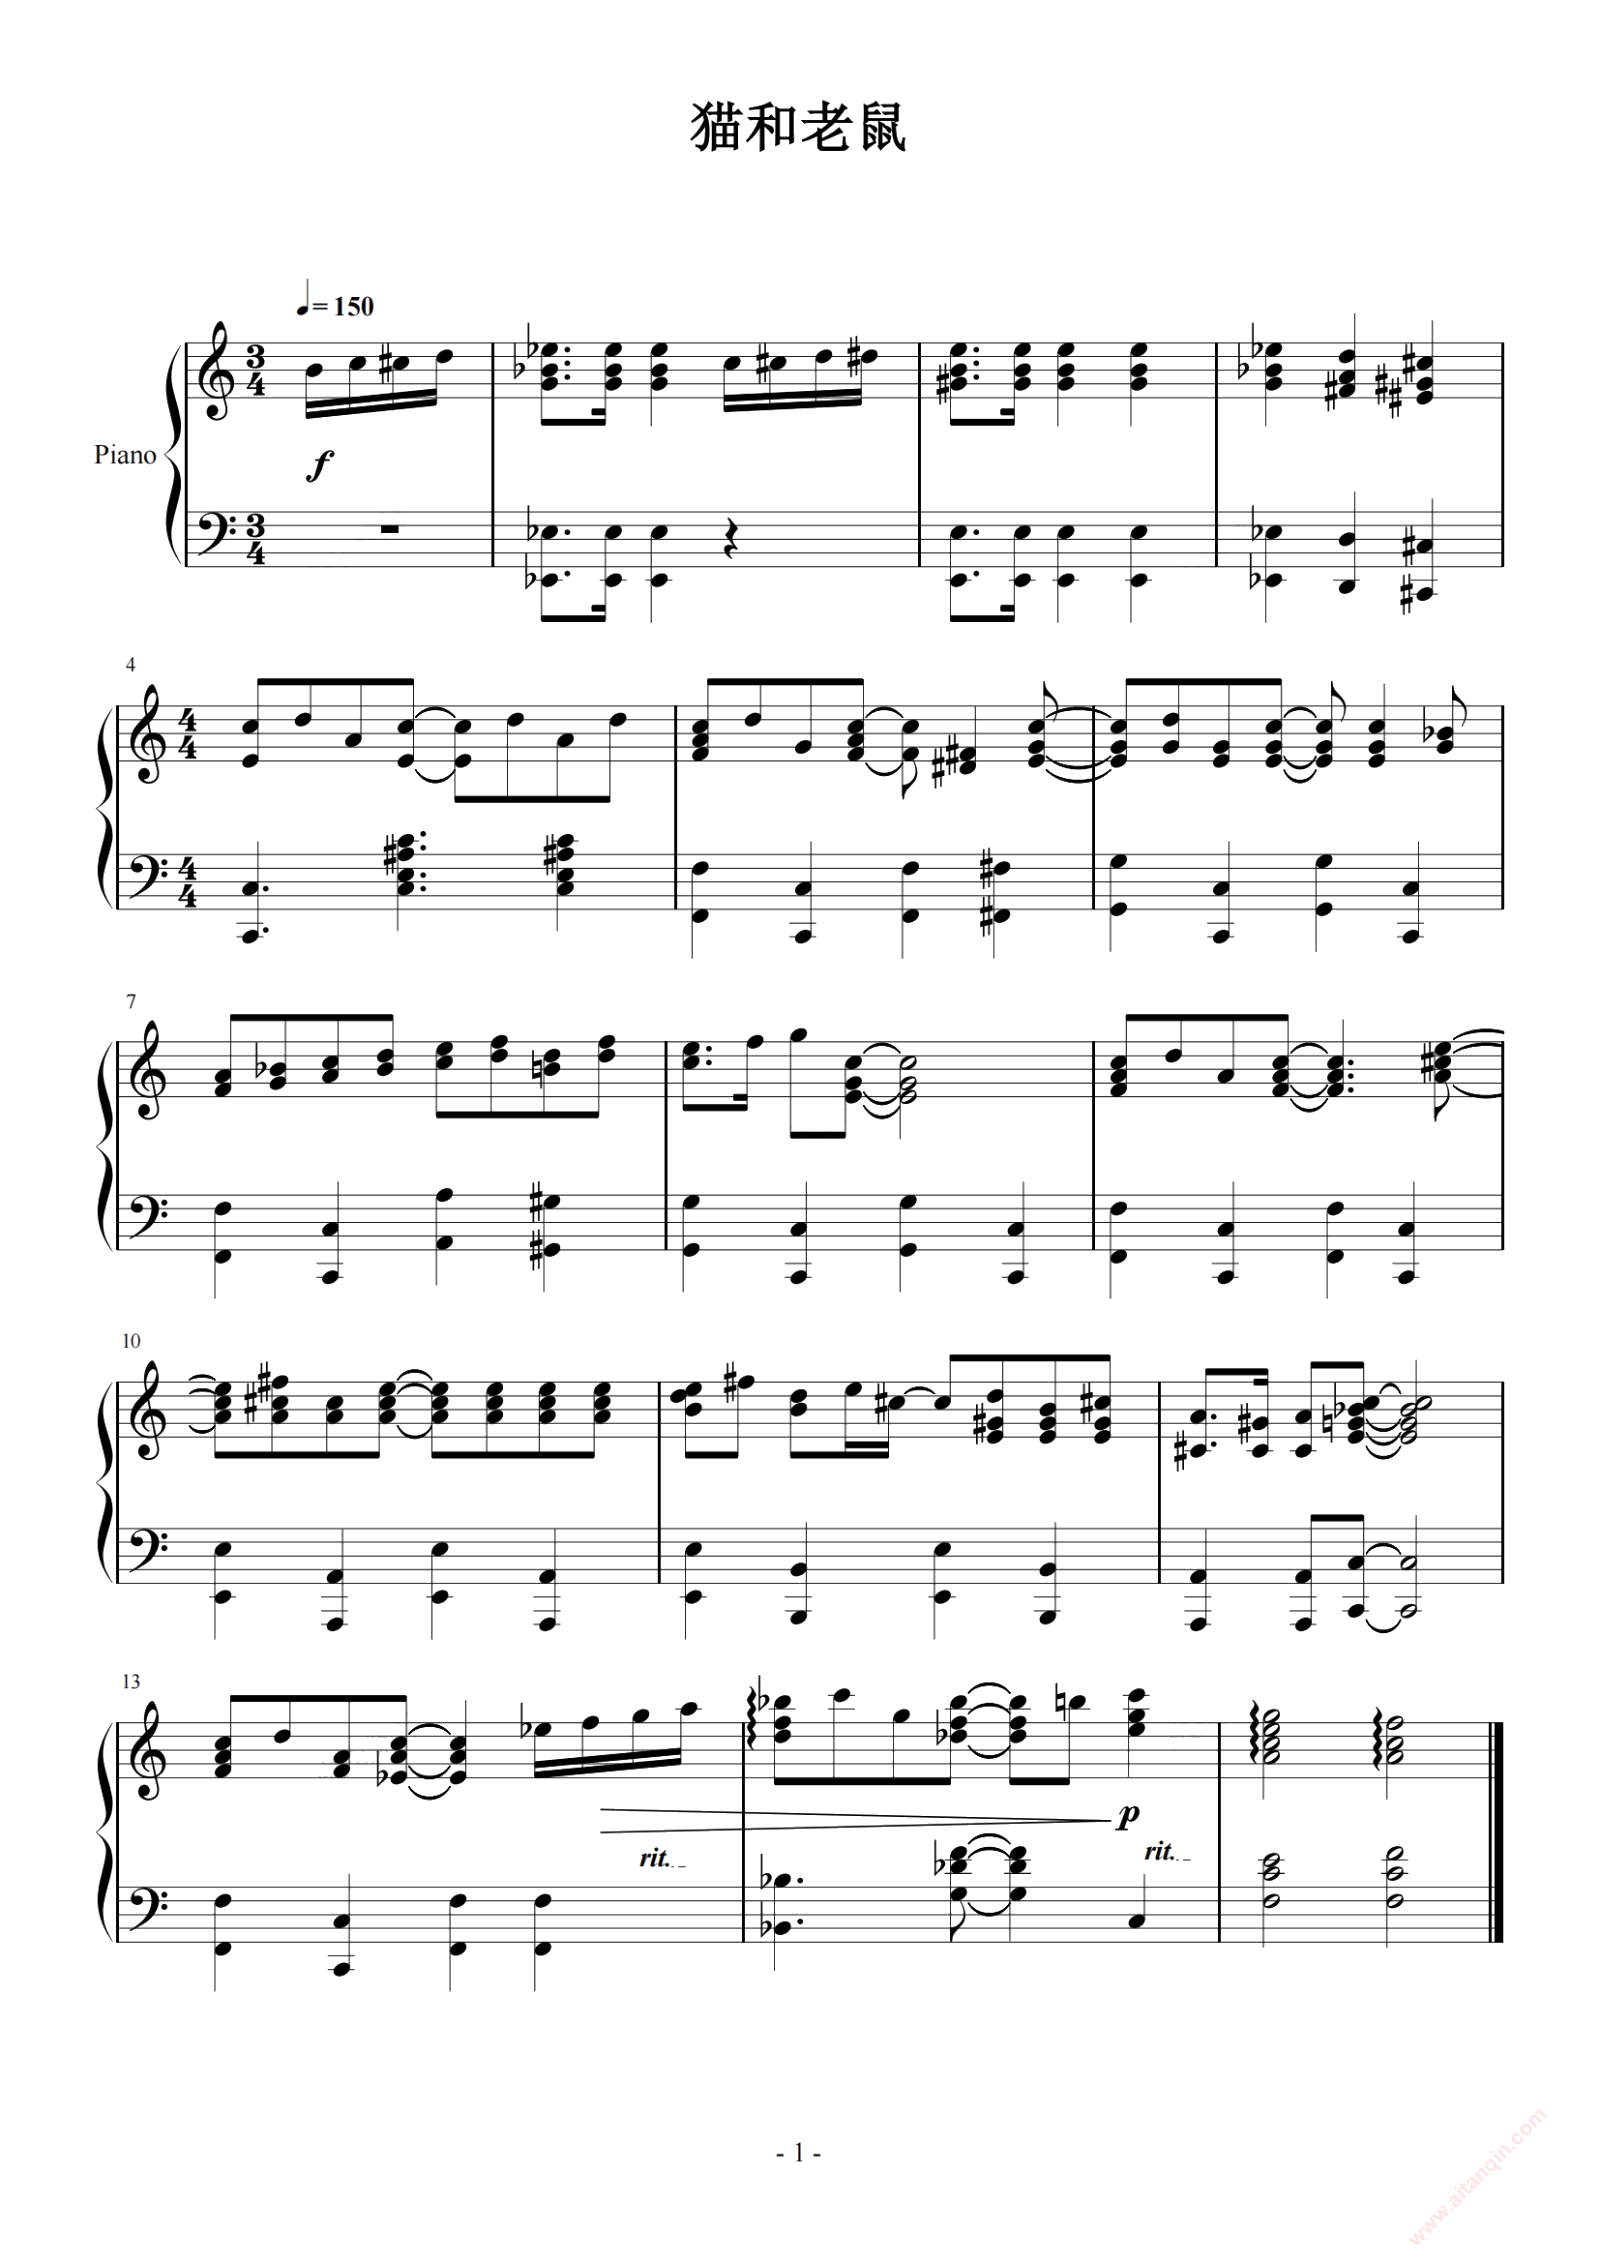 【10级-9-猫和老鼠(Op.34-No.3)钢琴谱】_在线免费打印下载-爱弹琴乐谱网